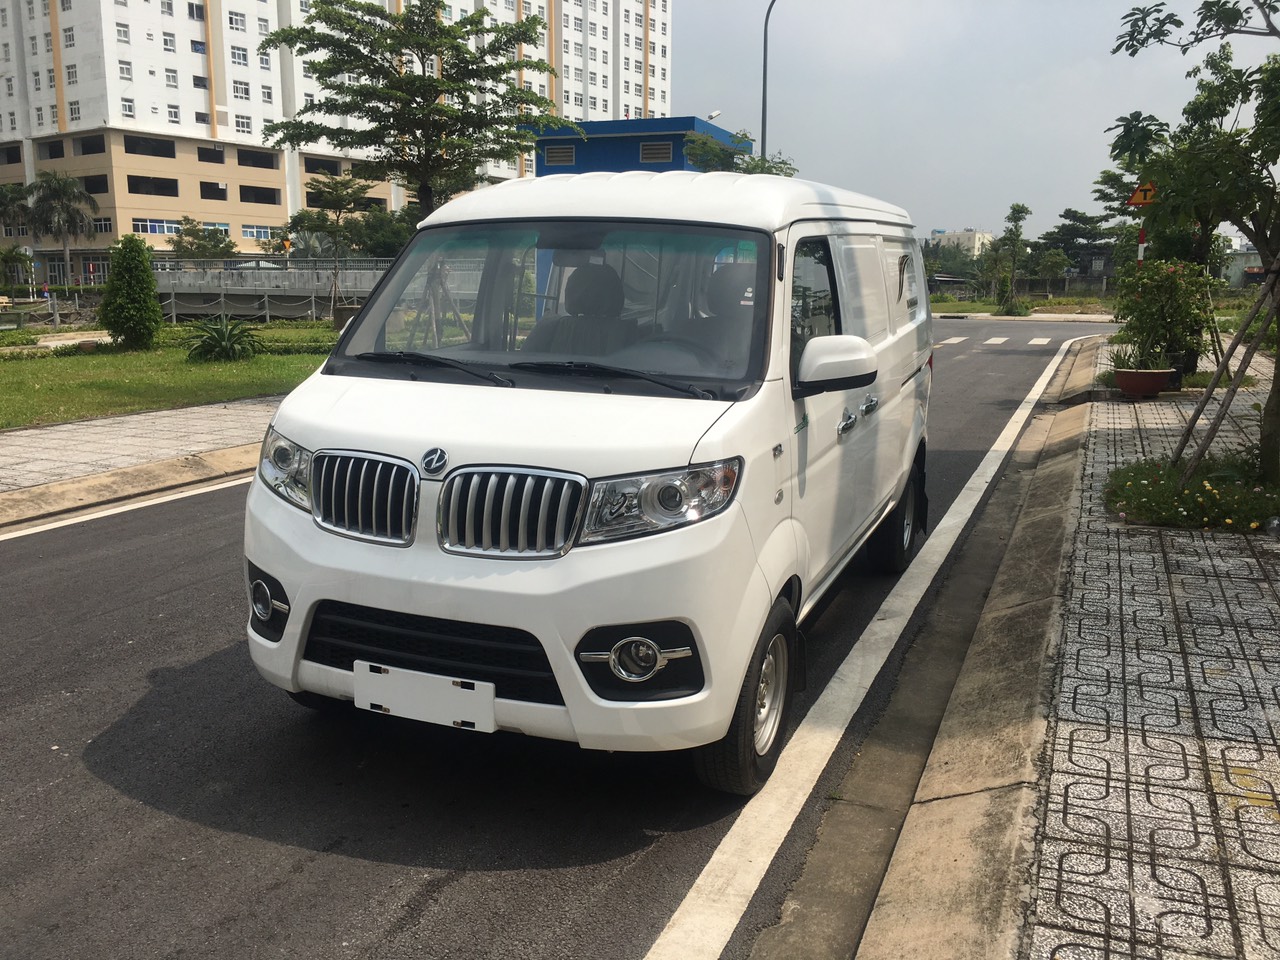 Cửu Long 2019 - Xe bán tải Van Dongben 2 chỗ ngồi tải trọng 950 kg, xe giá rẻ